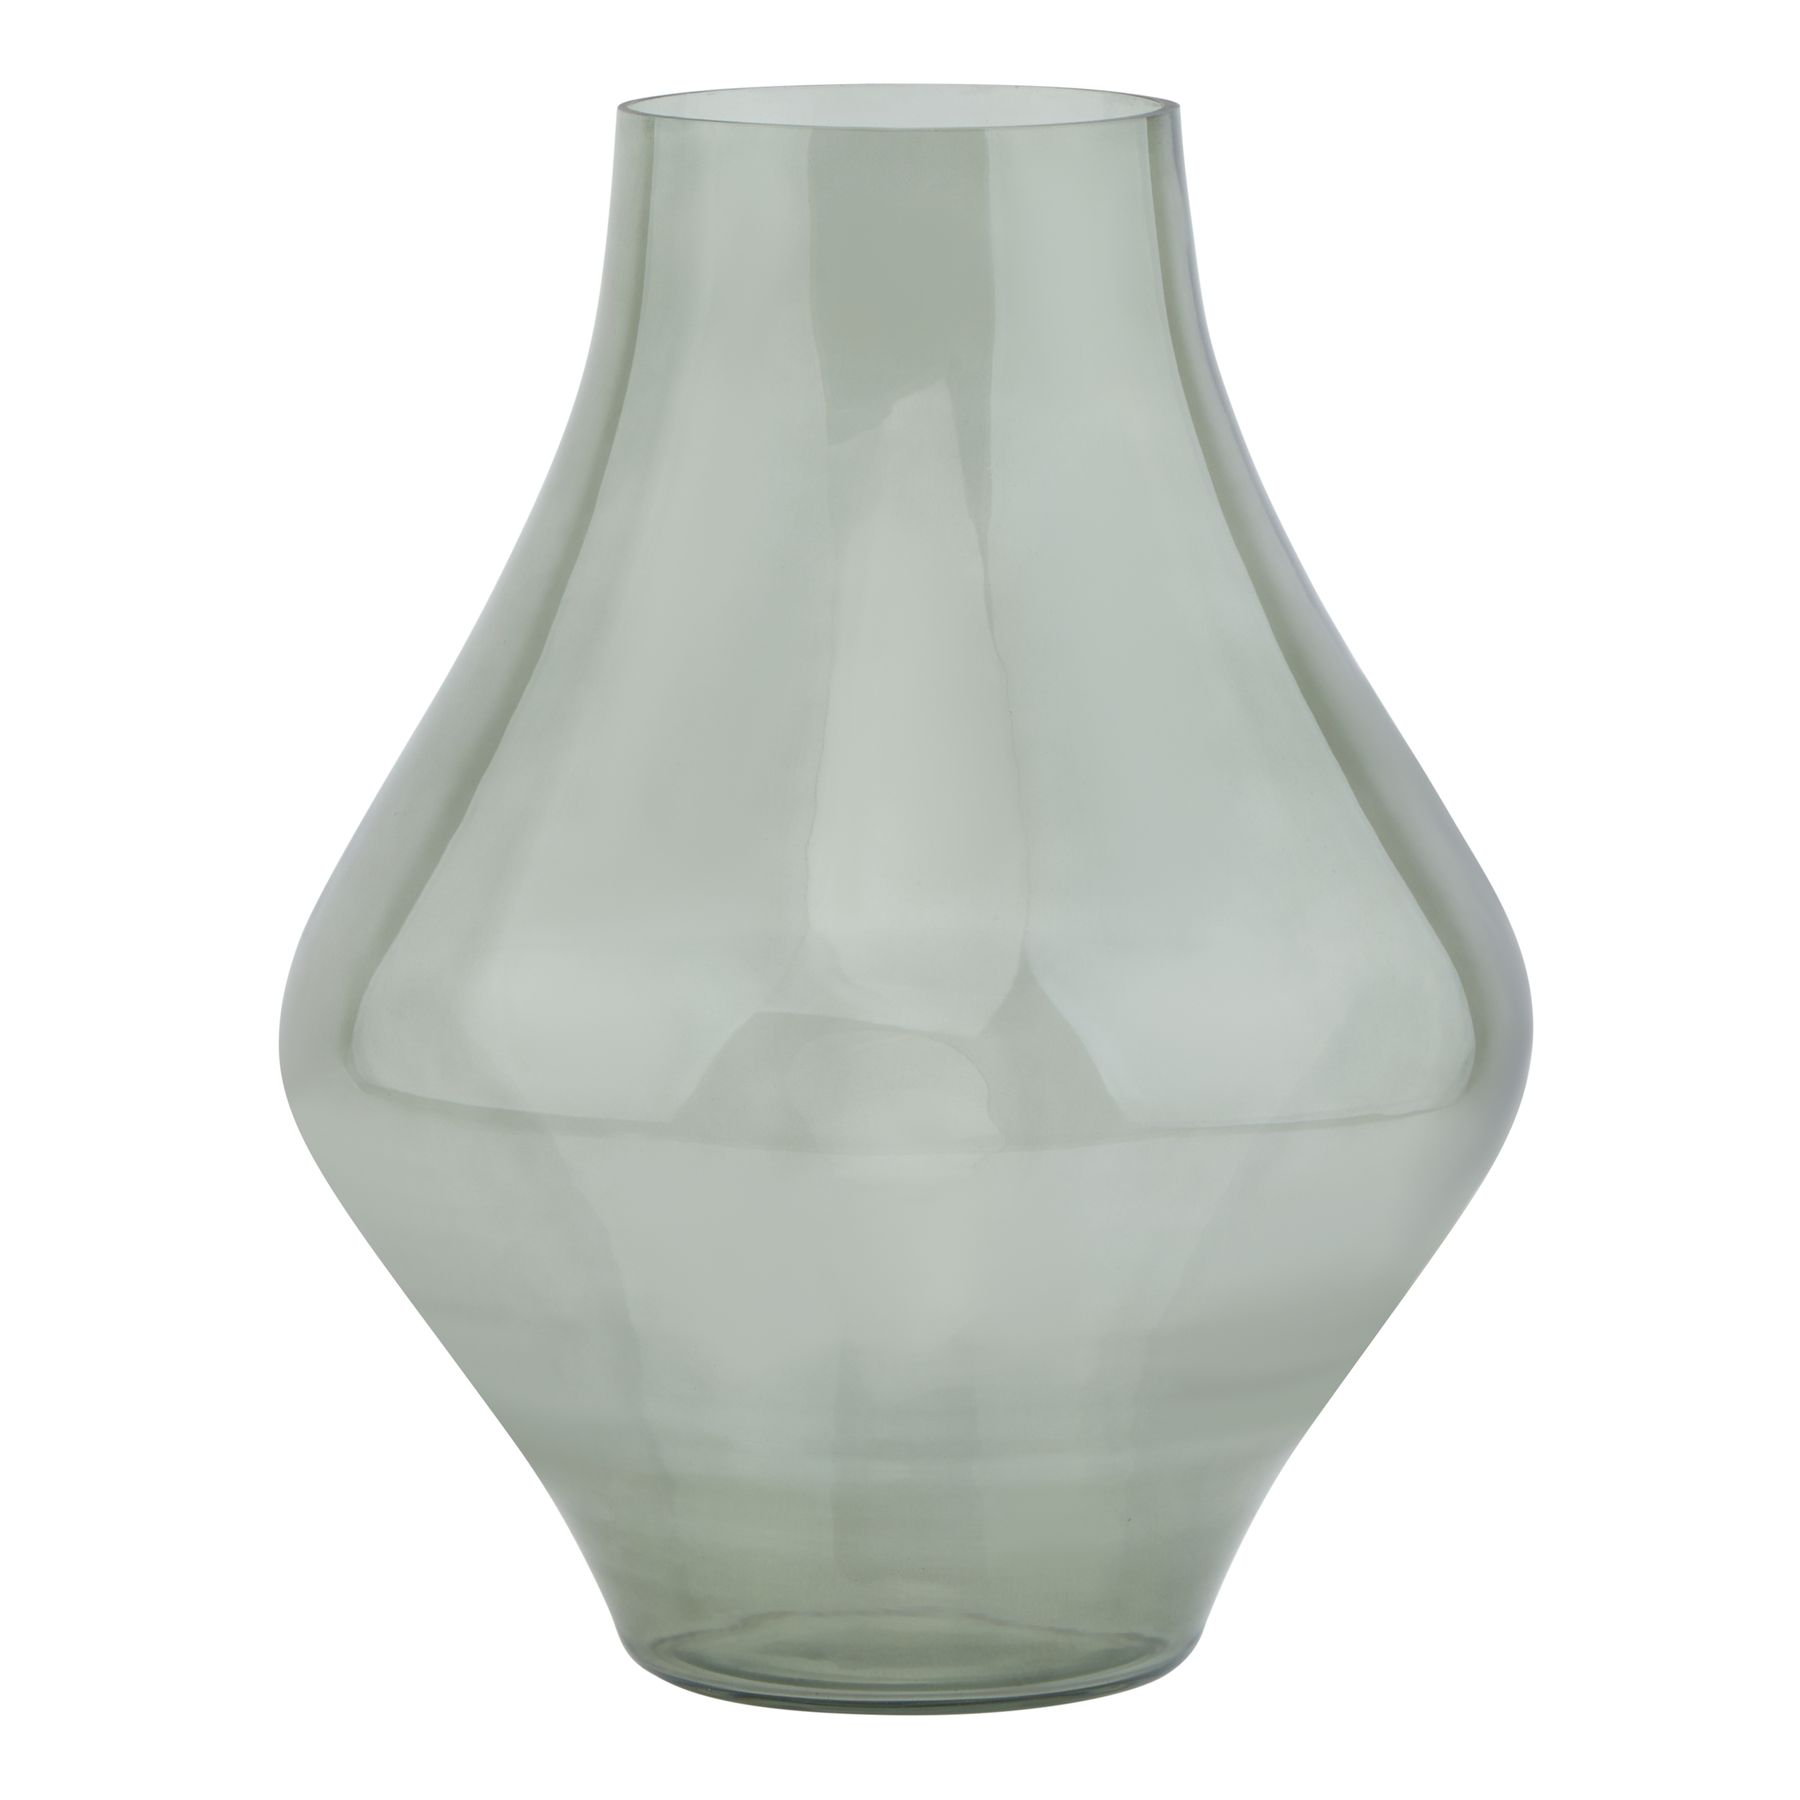 Platform Bouquet Vase Sage Green - Image 1